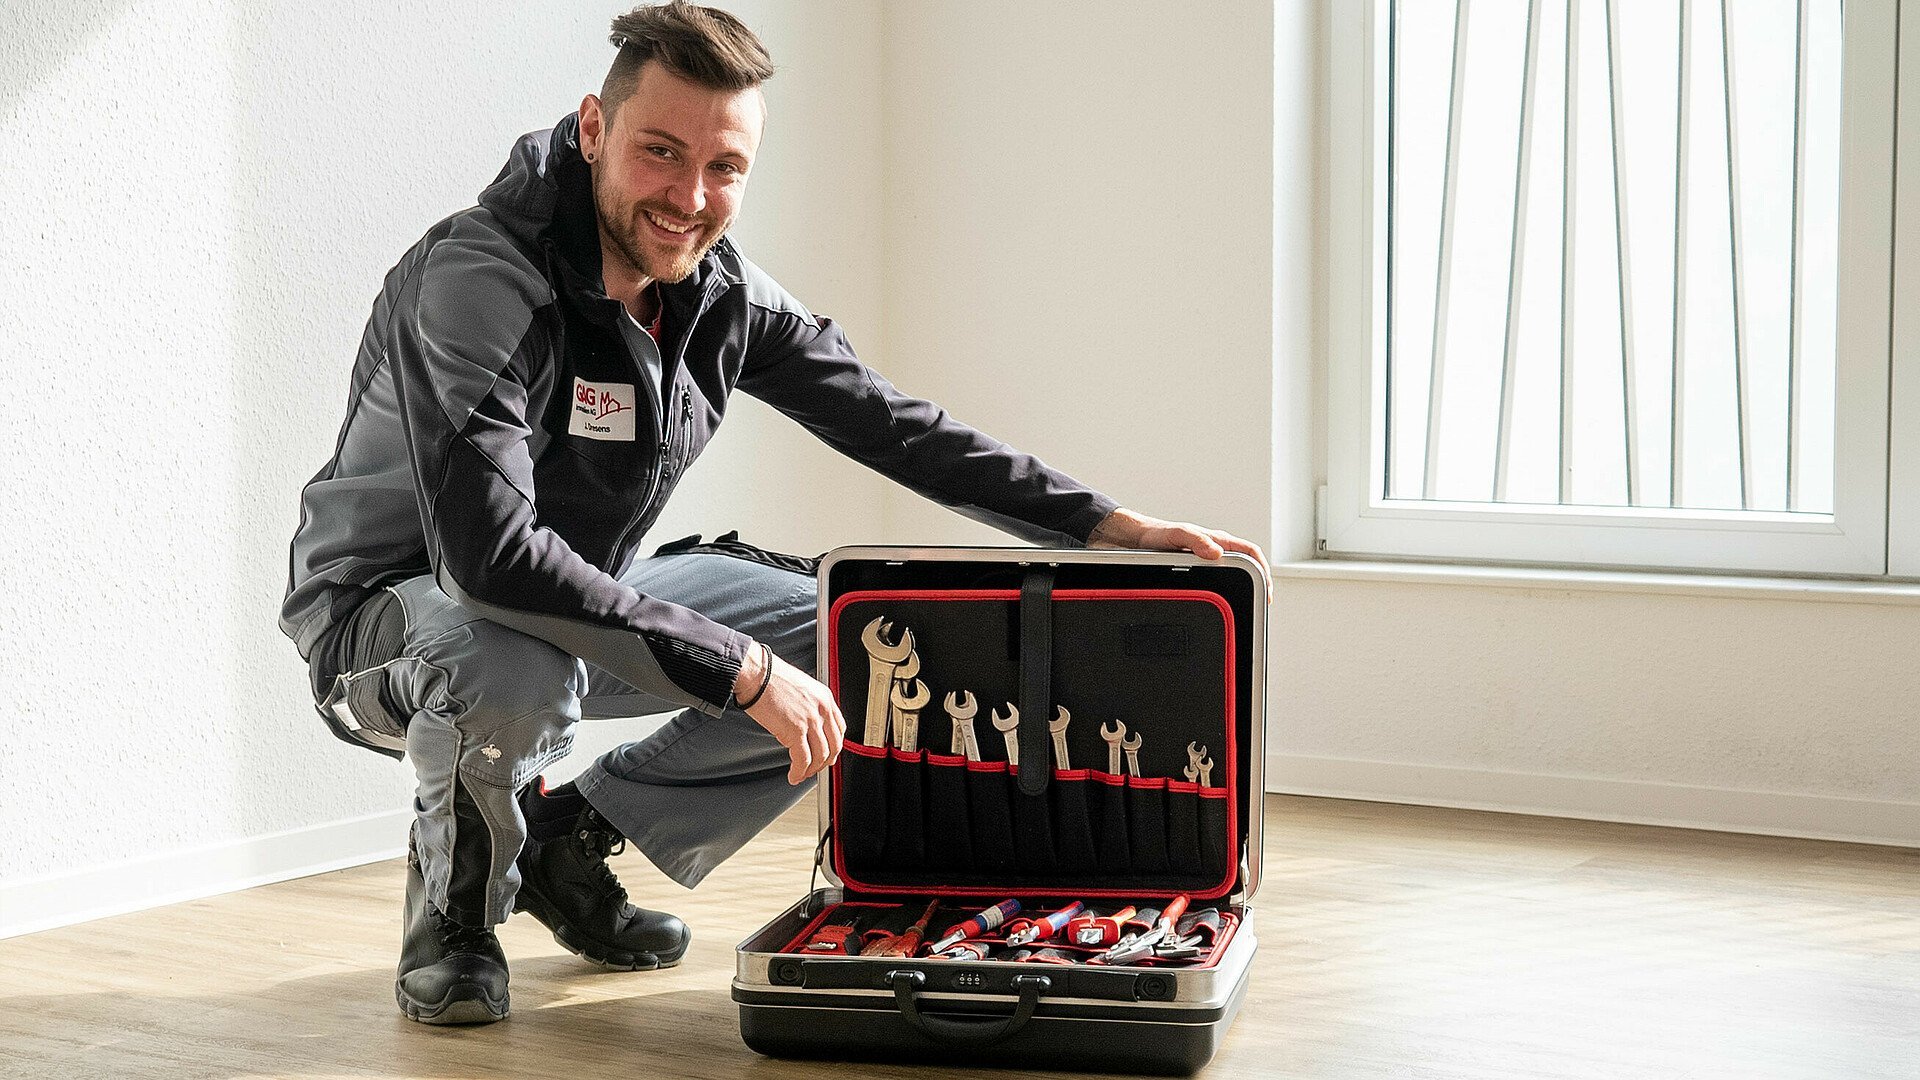 GAG-Hausmeister Justin Dresens präsentiert seine Grundausstattung an Werkzeug